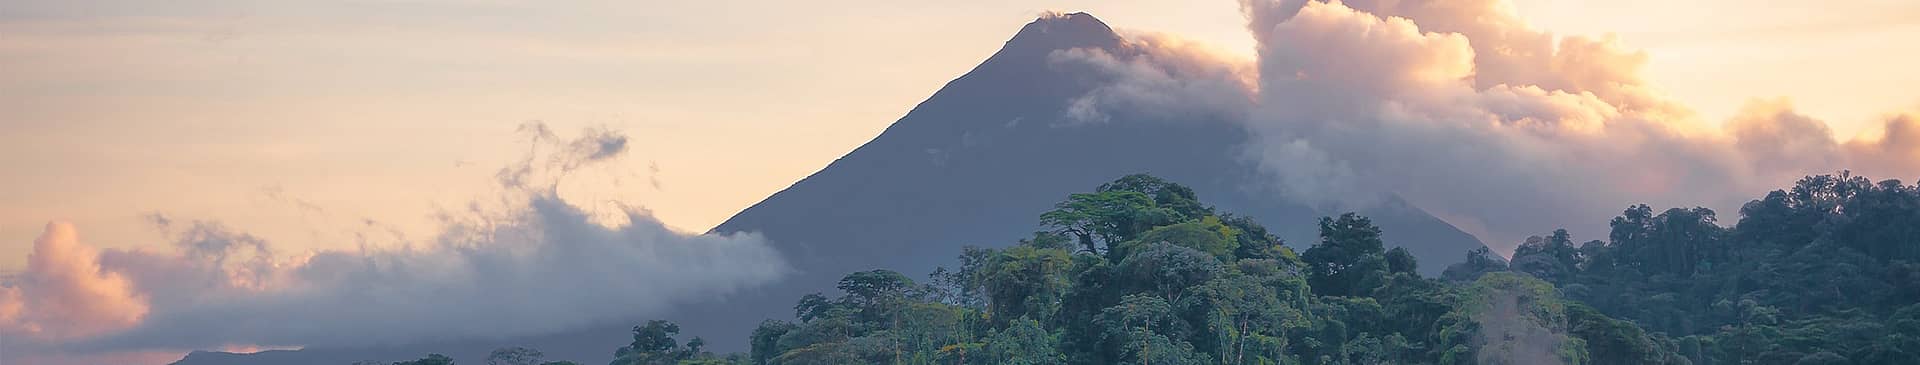 Costa Rica in September